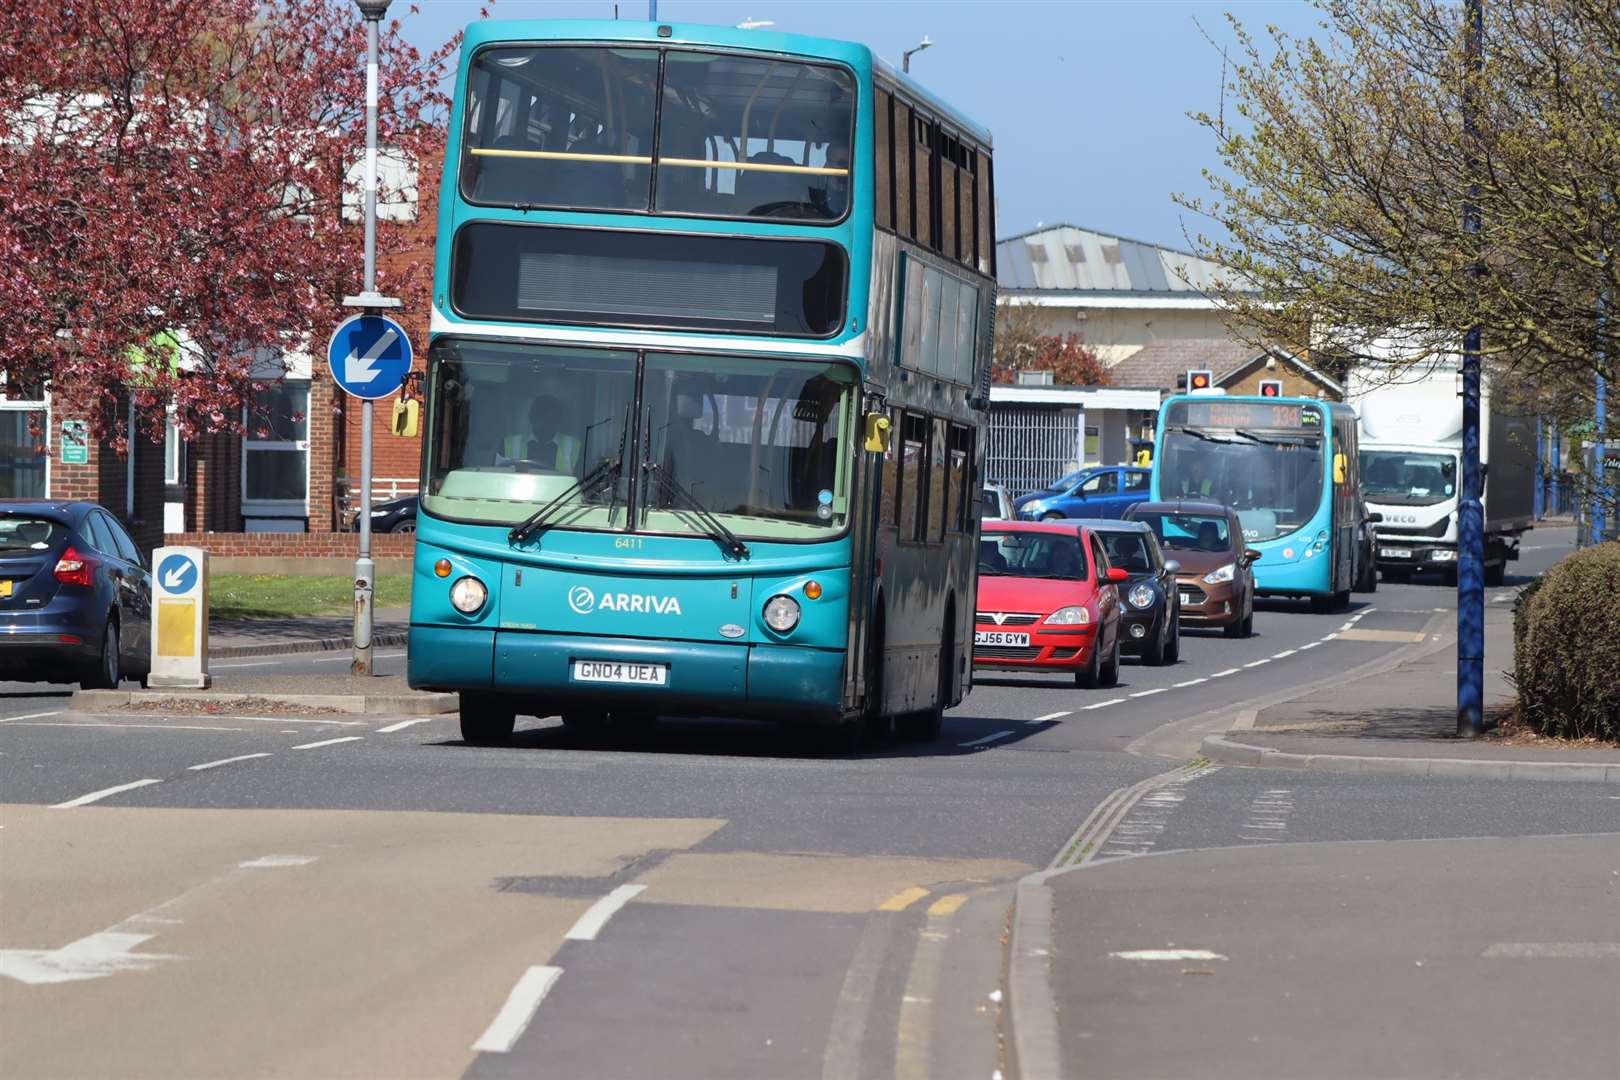 Arriva buses in Millennium Way Sheerness. PIcture: John Nurden (58719112)